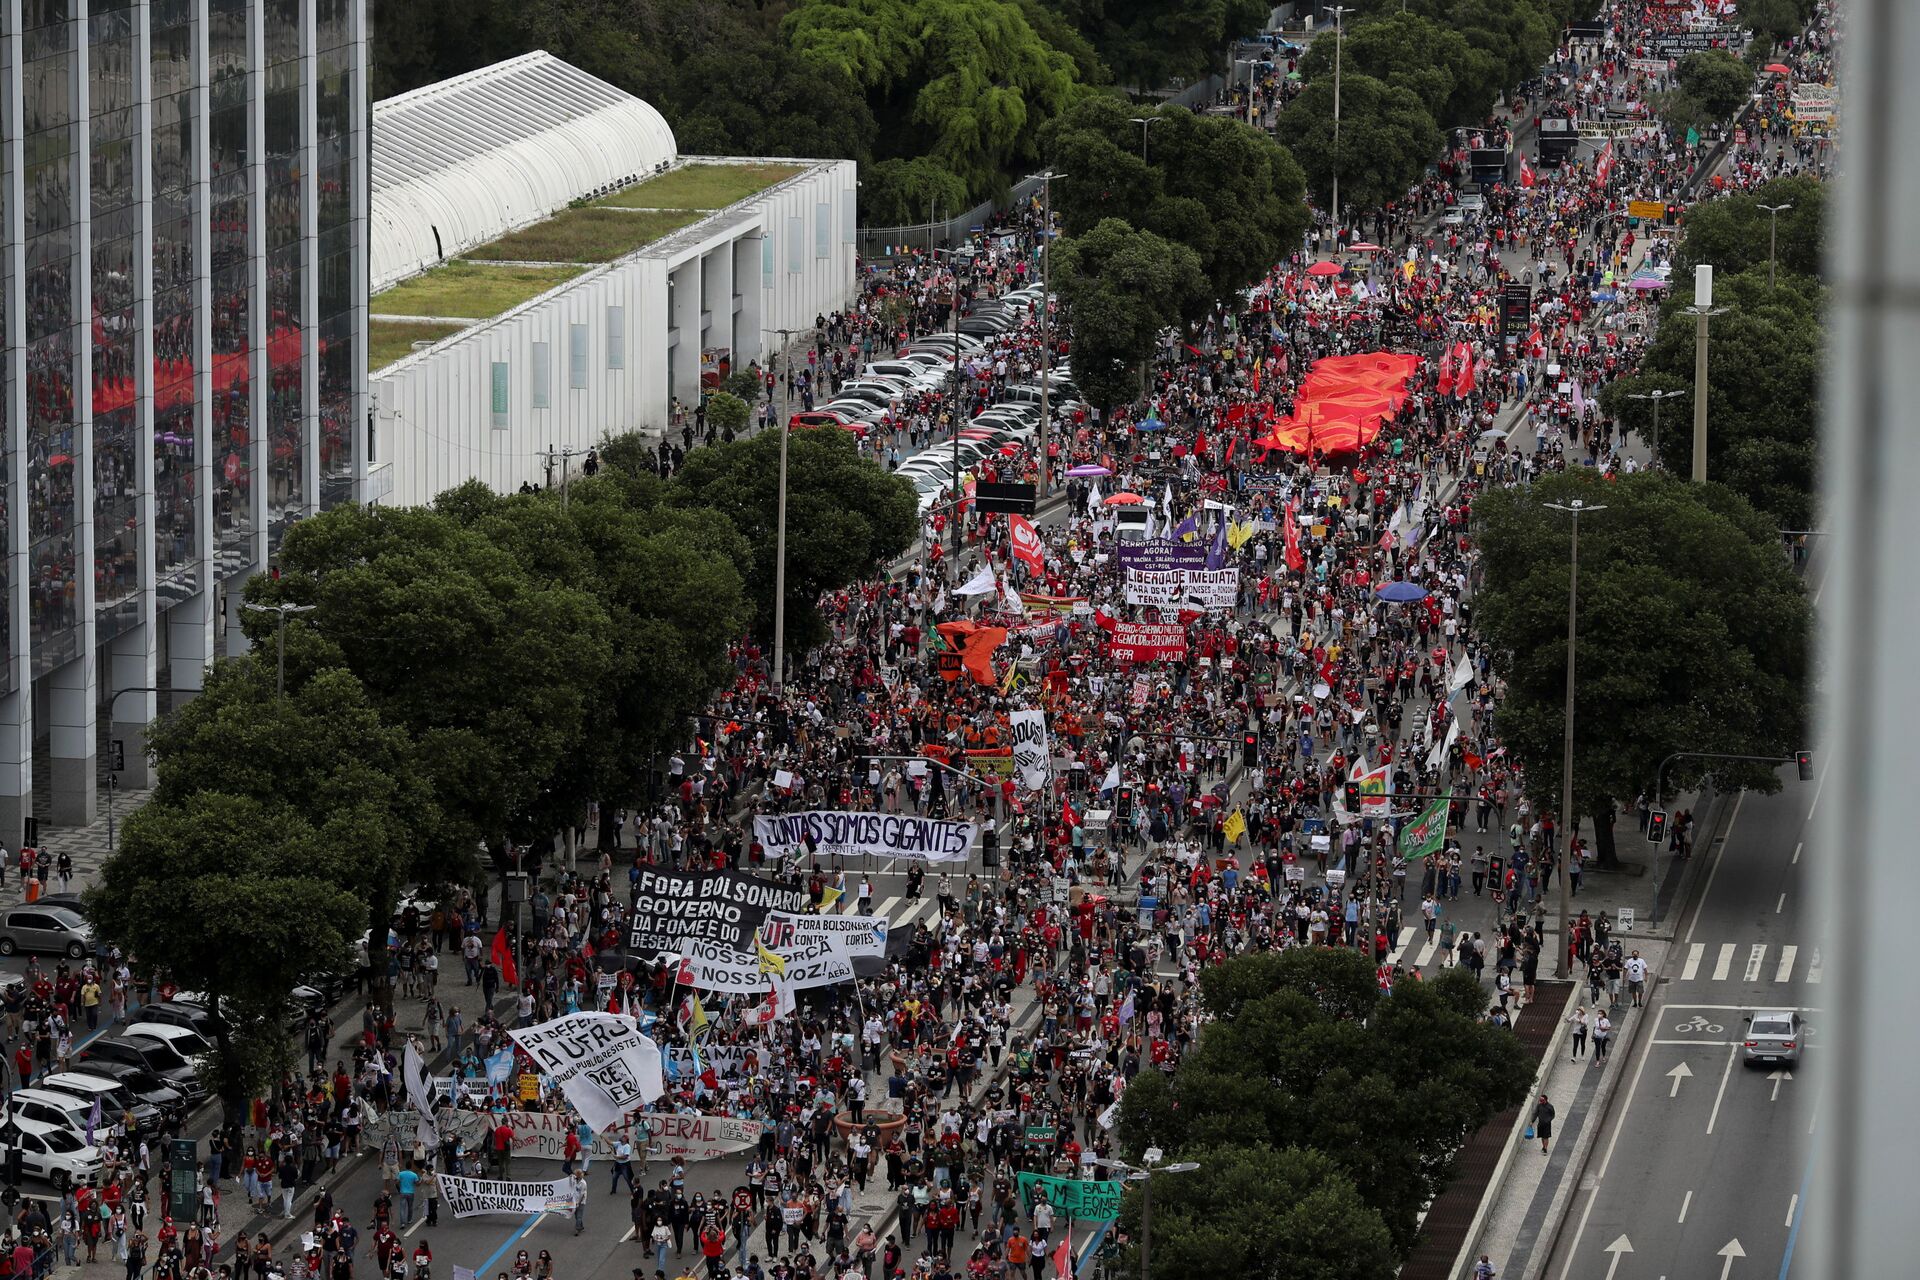 Com marca de 500 mil mortes por COVID-19 ultrapassada, atos contra Bolsonaro reúnem milhares (FOTOS) - Sputnik Brasil, 1920, 19.06.2021